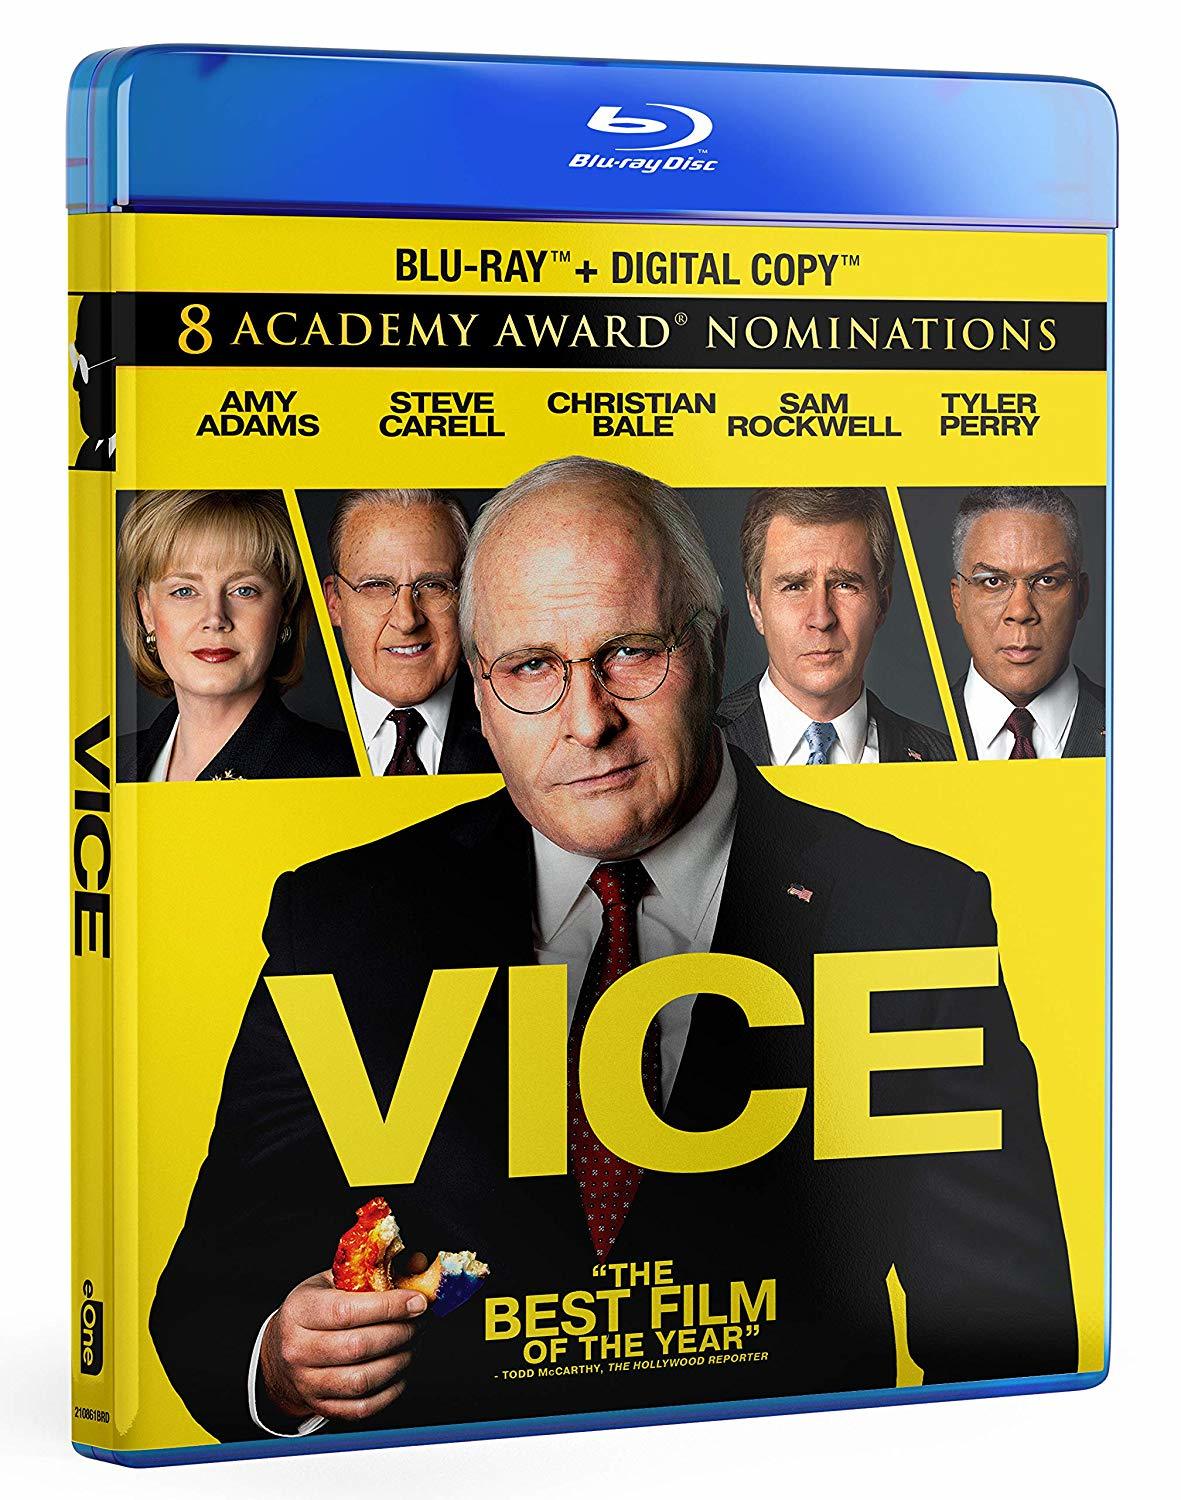 Vice Blu-ray